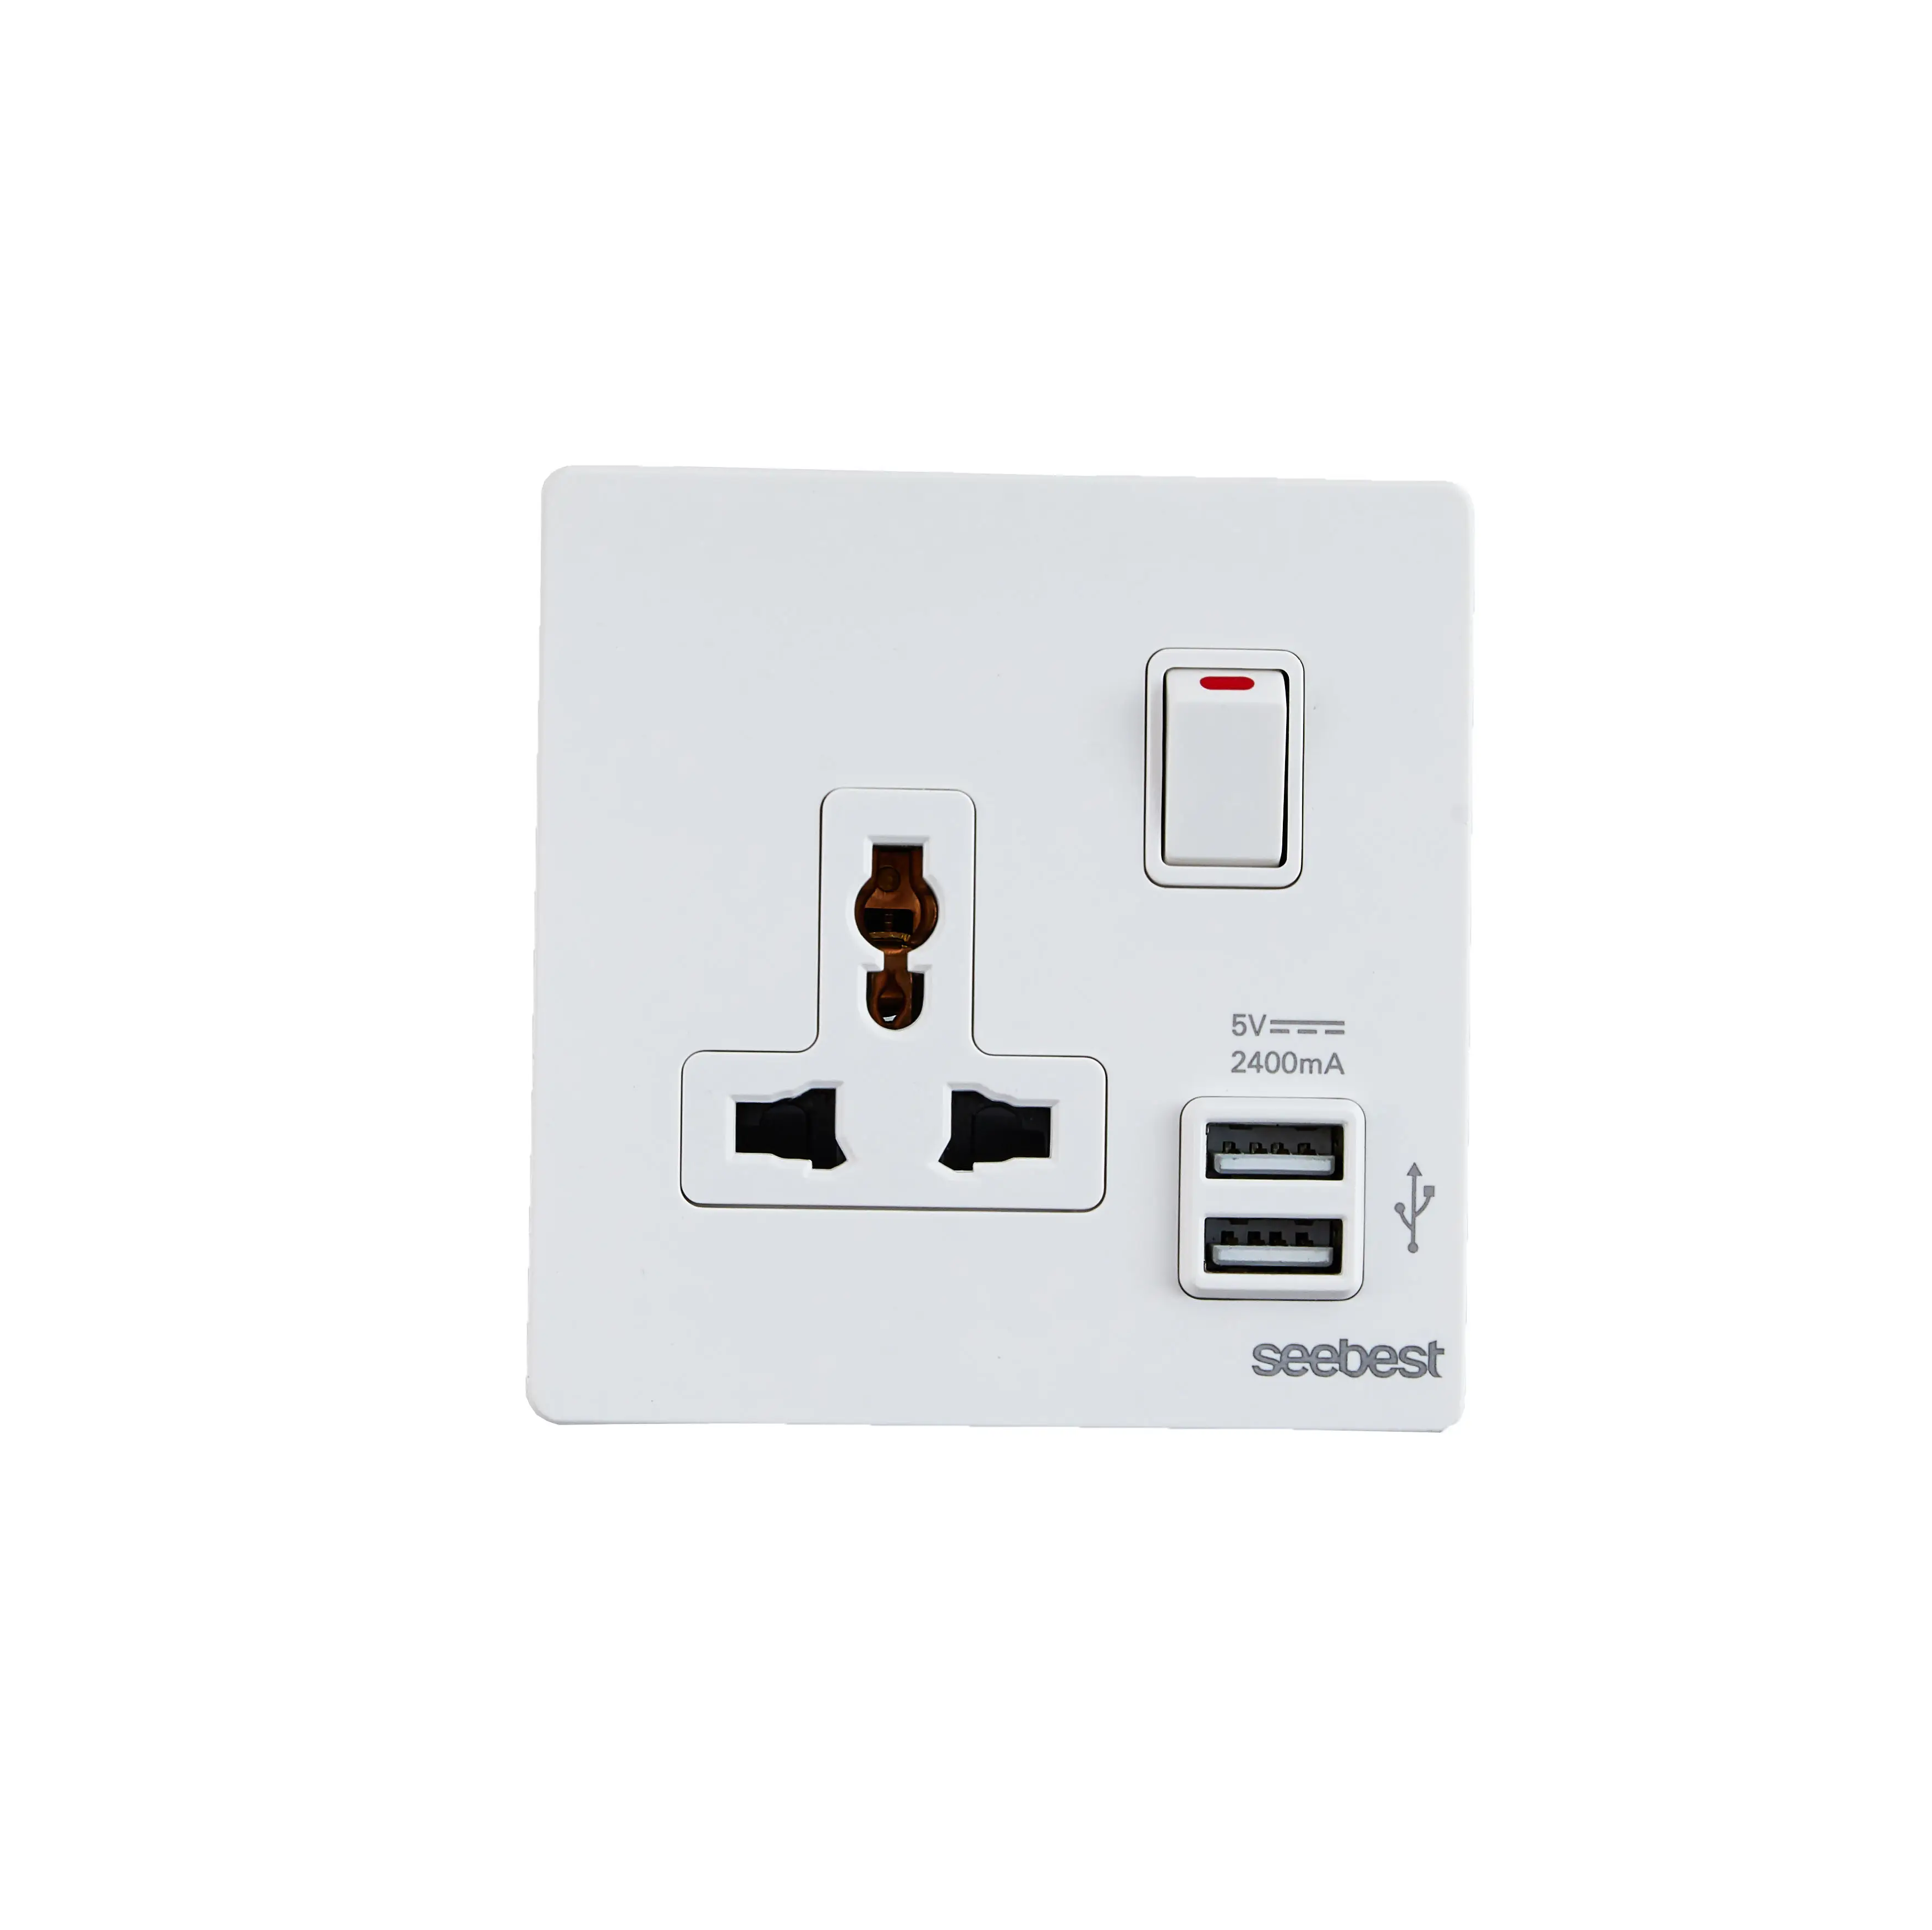 Prise Standard universelle populaire, interrupteur mural électrique avec Port USB et voyant lumineux pour la maison